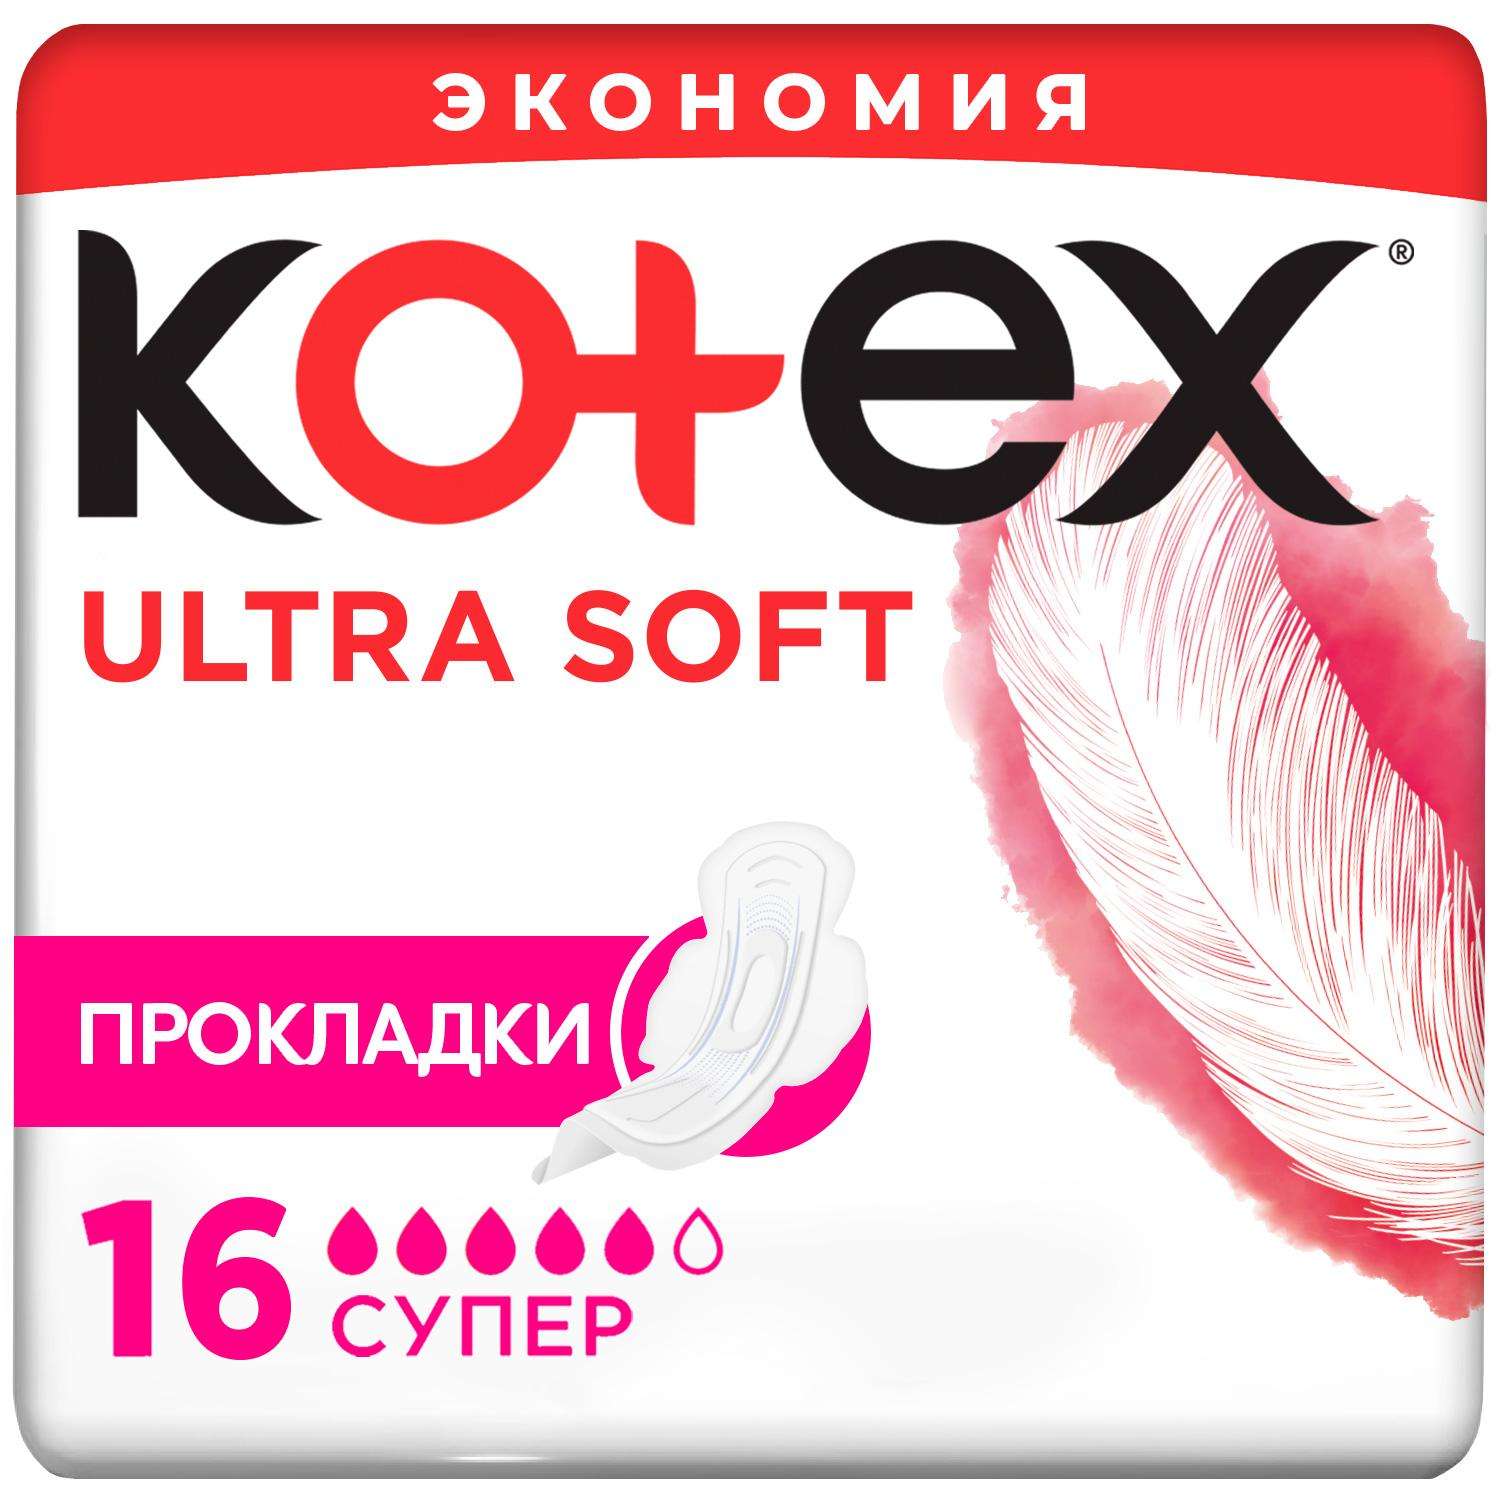 Прокладки KOTEX Ultra Soft Super 16шт - фото 2